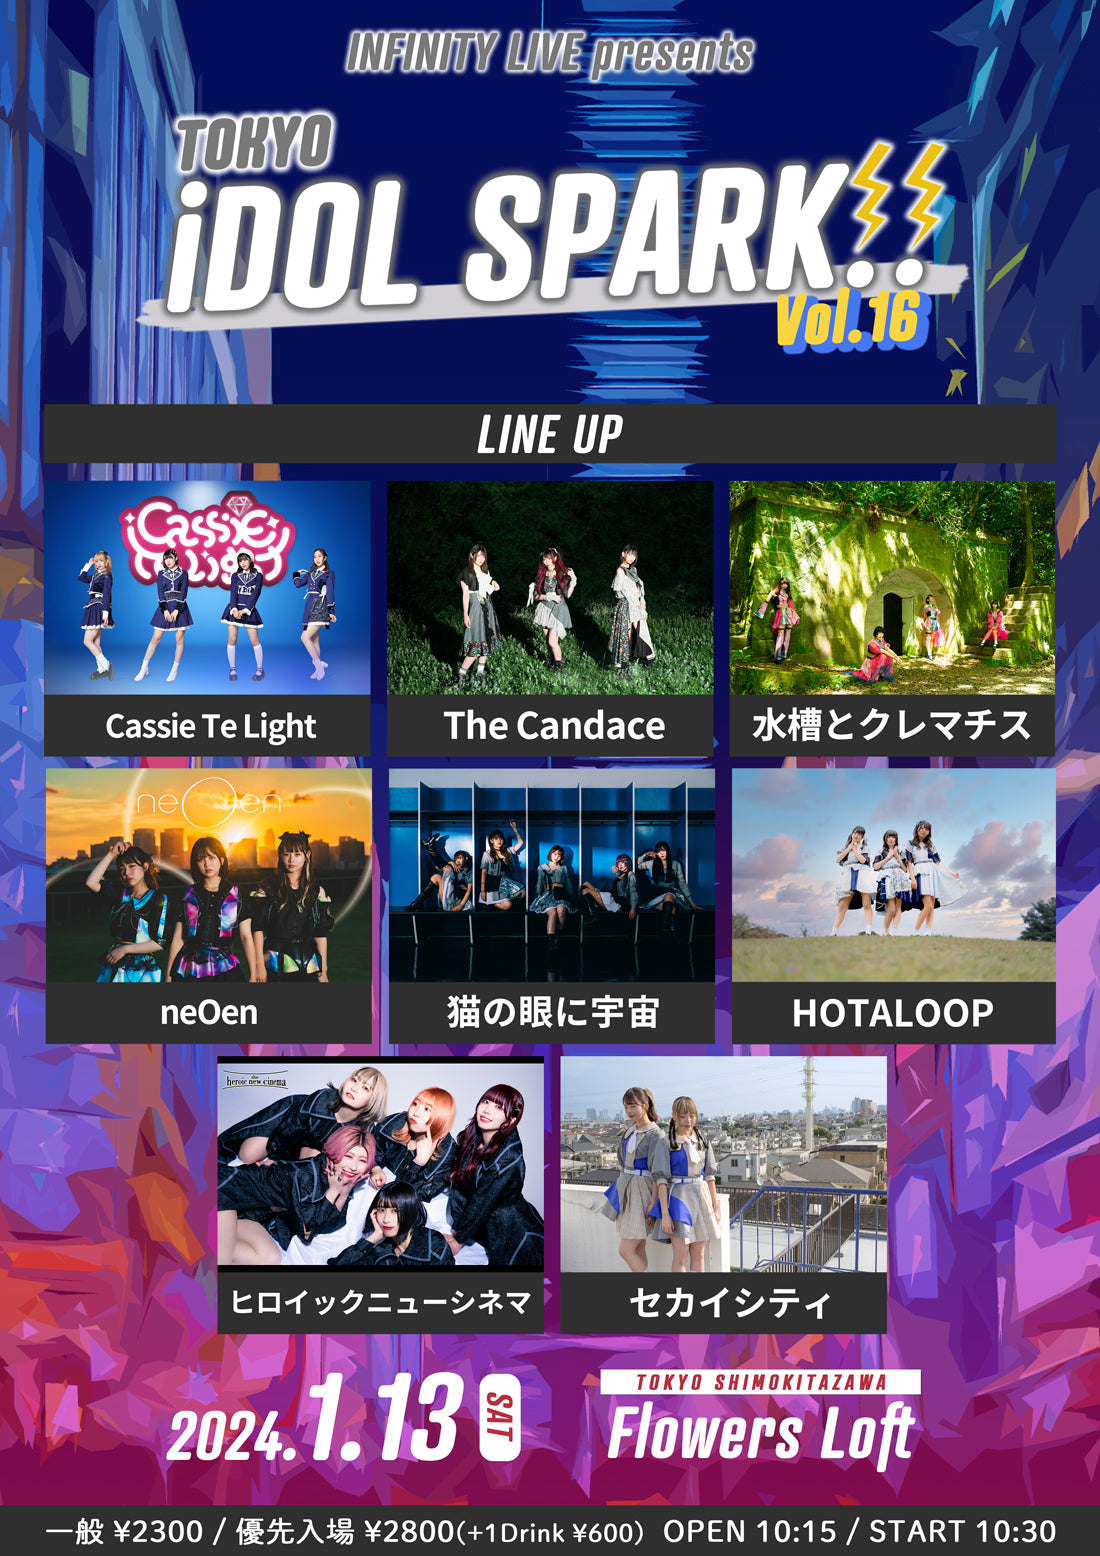 1/13(土・昼)INFINITY LIVE presents 『TOKYO iDOL SPARK!! vol.16』